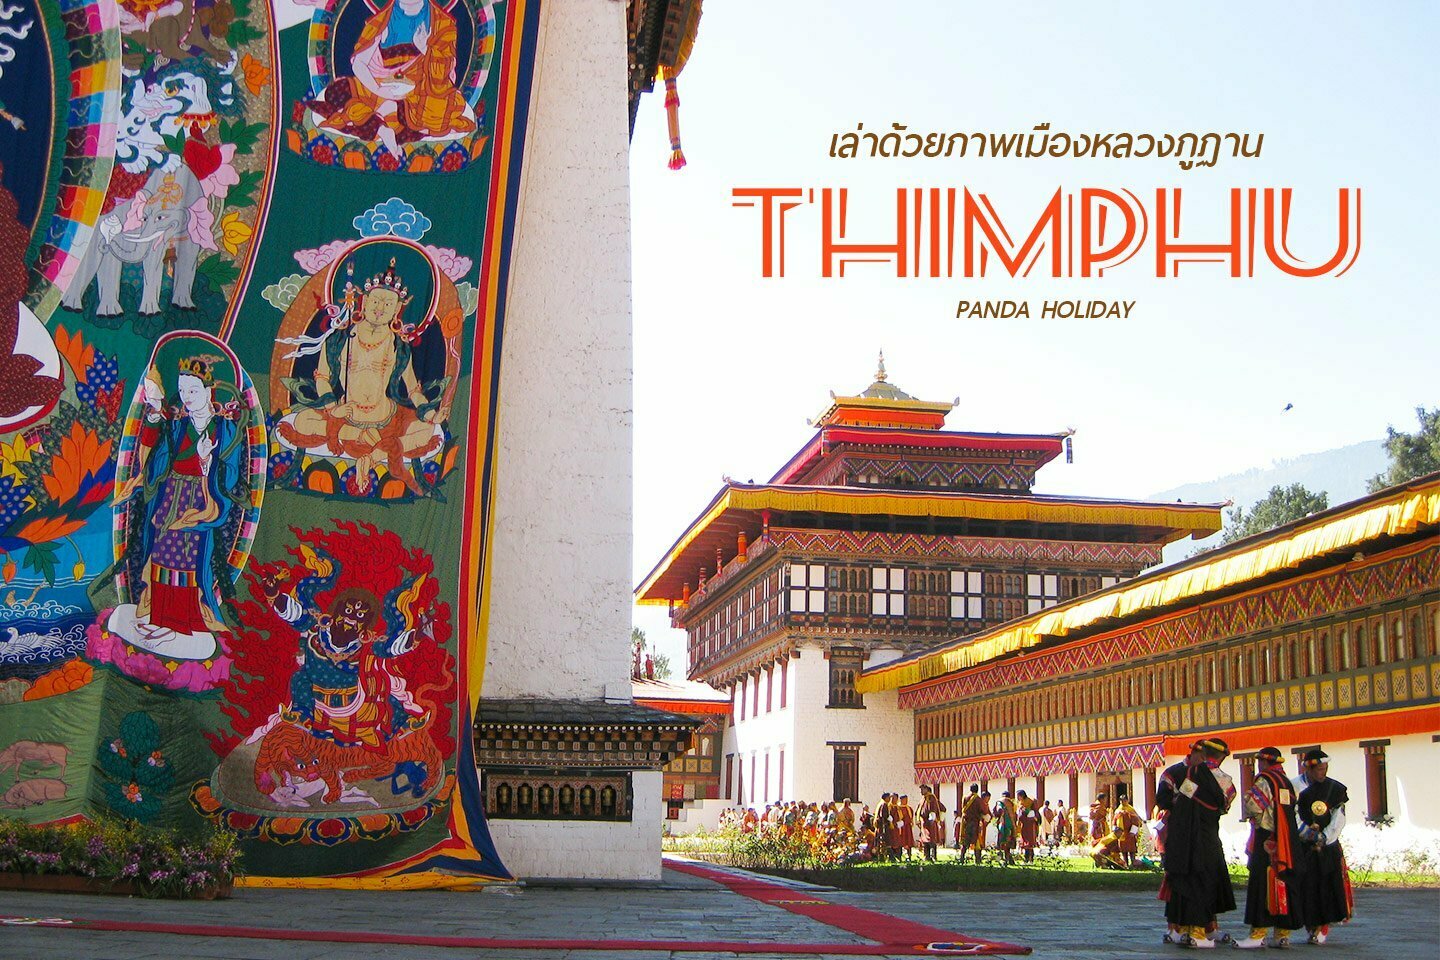 เล่าด้วยภาพ กรุงทิมพู เมืองหลวงภูฏาน